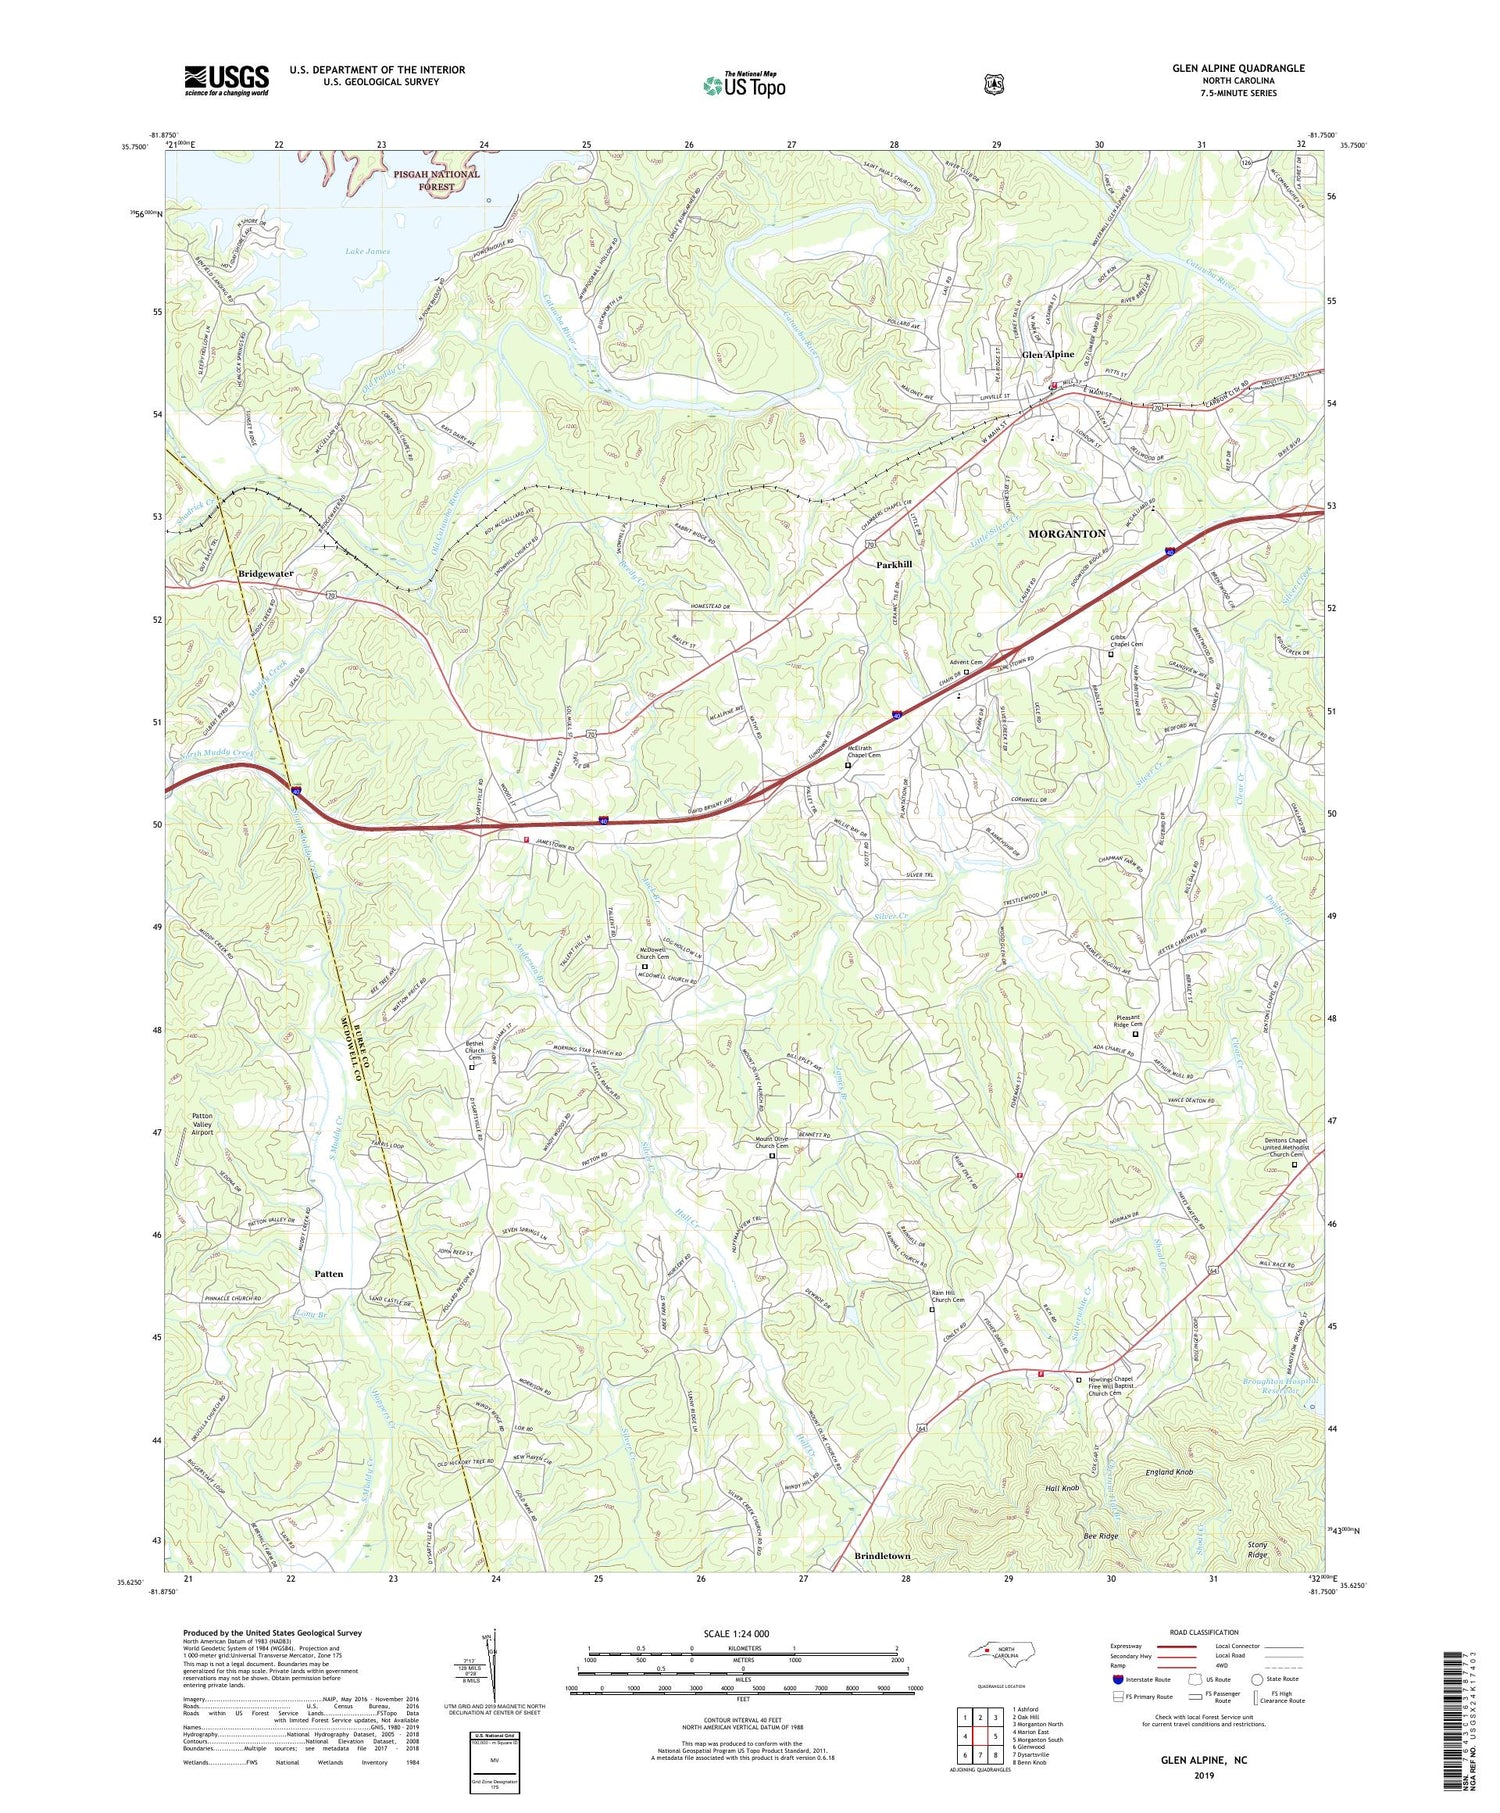 Glen Alpine North Carolina US Topo Map Image